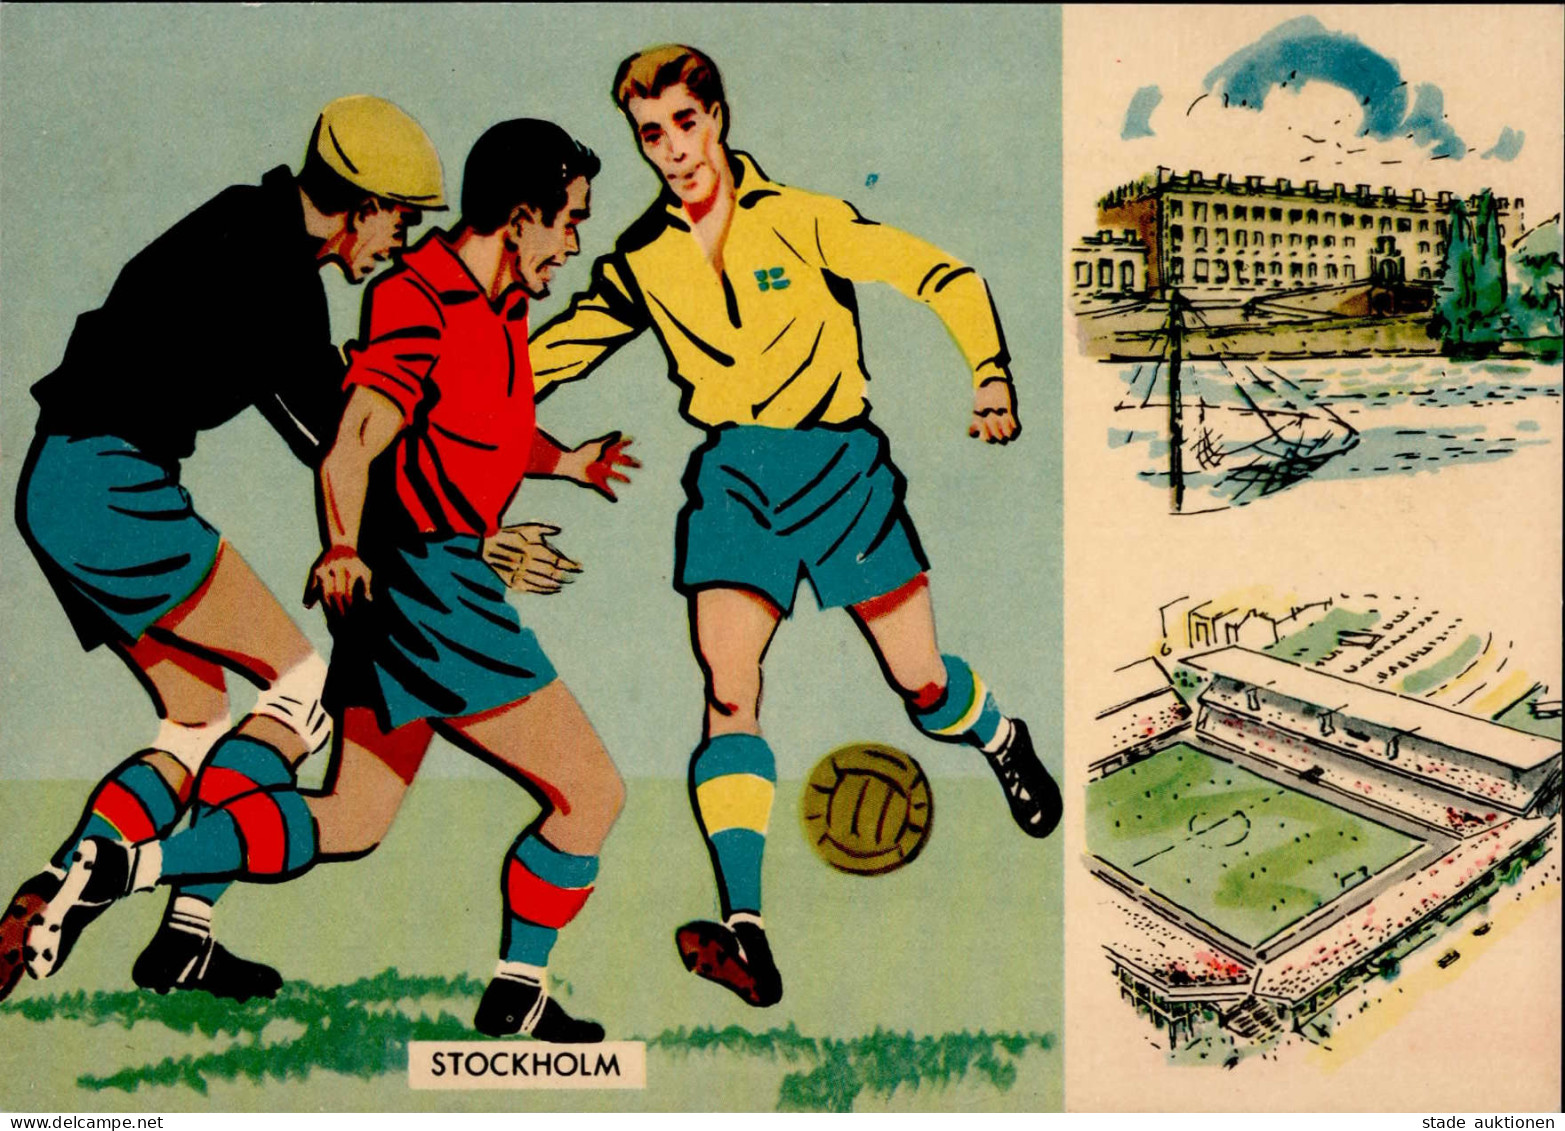 FUSSBALL - STOCKHOLM - FUSSBALL-WELTMEISTERSCHAFT 1958 FRANKREICH-BRASILIEN S-o I - Soccer